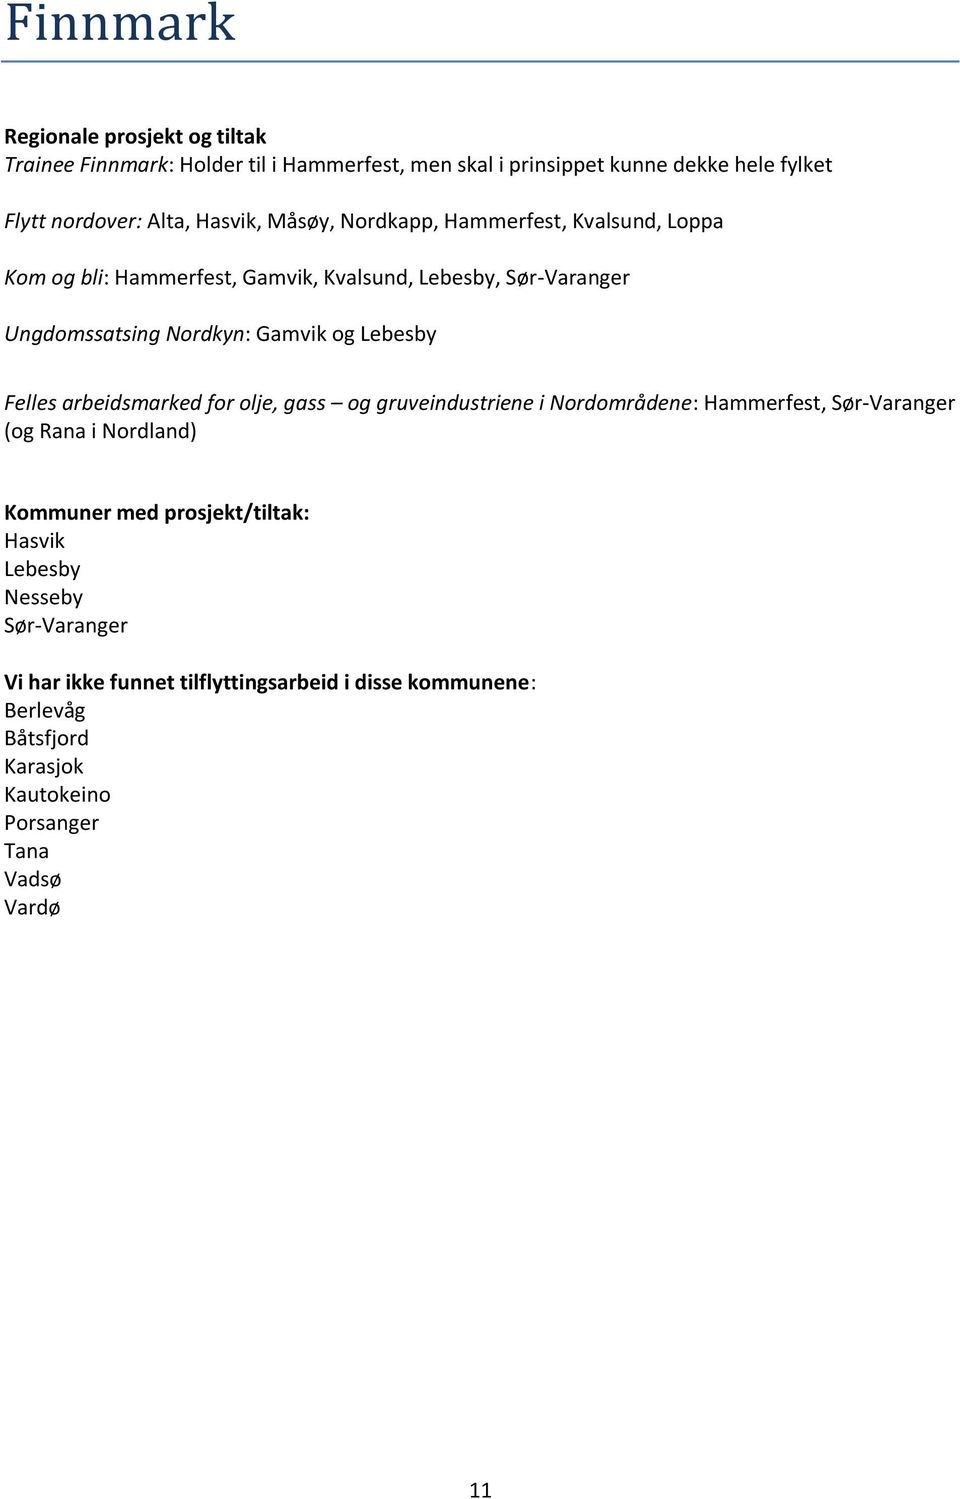 Lebesby Felles arbeidsmarked for olje, gass og gruveindustriene i Nordområdene: Hammerfest, Sør-Varanger (og Rana i Nordland) Kommuner med